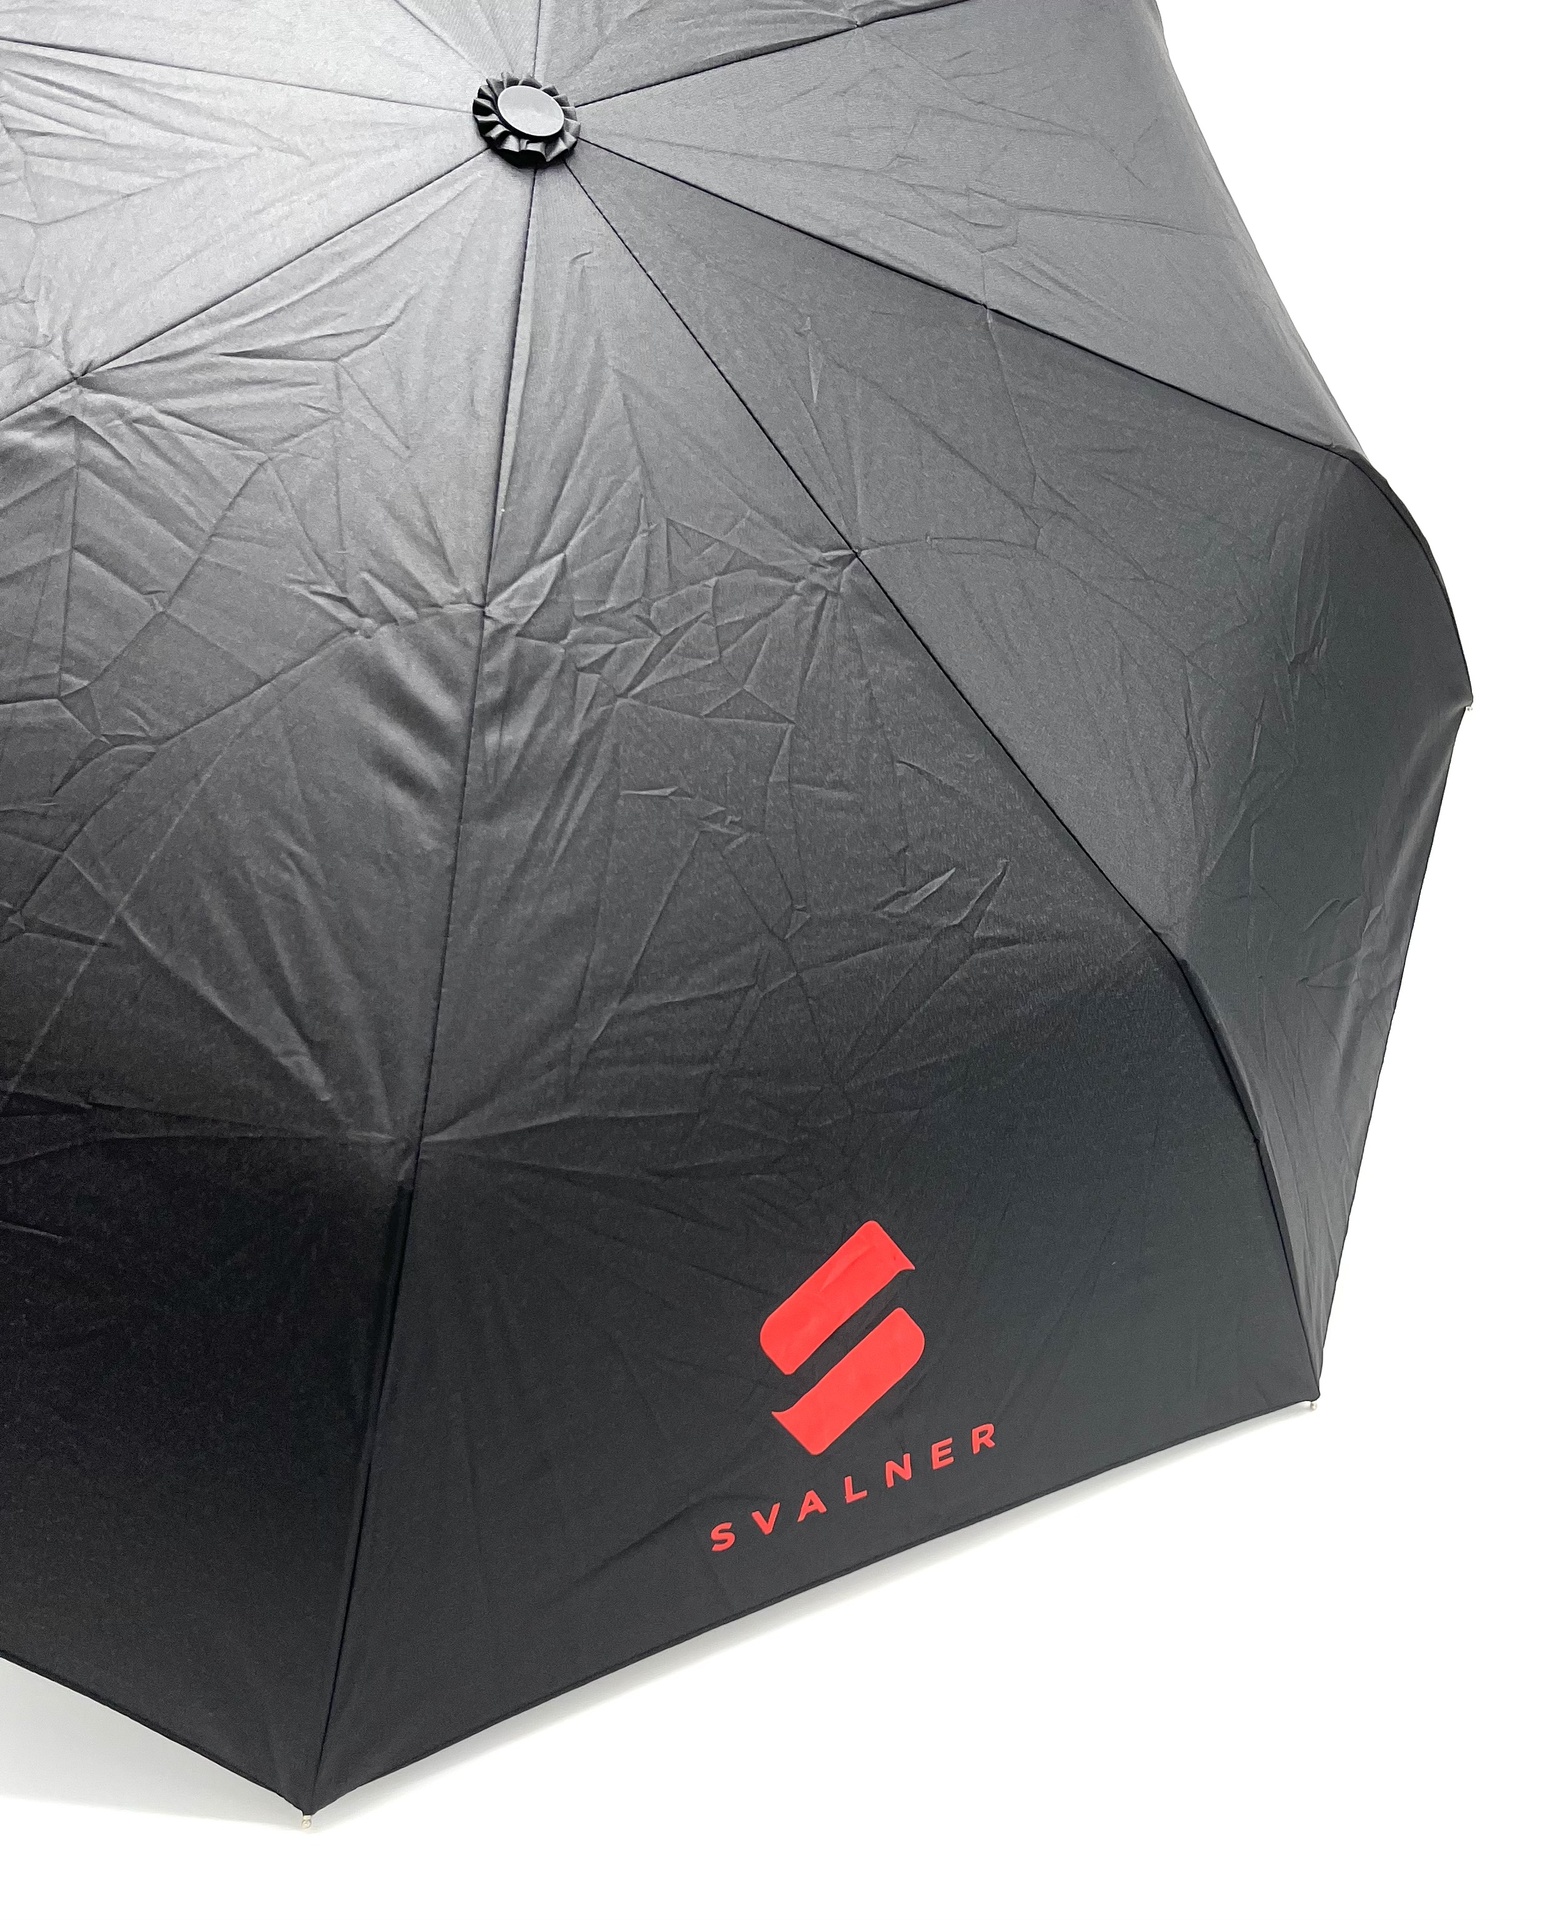 [EESVA01012] Paraply liten svart med Svalner 2 x röd logo 25st/krt